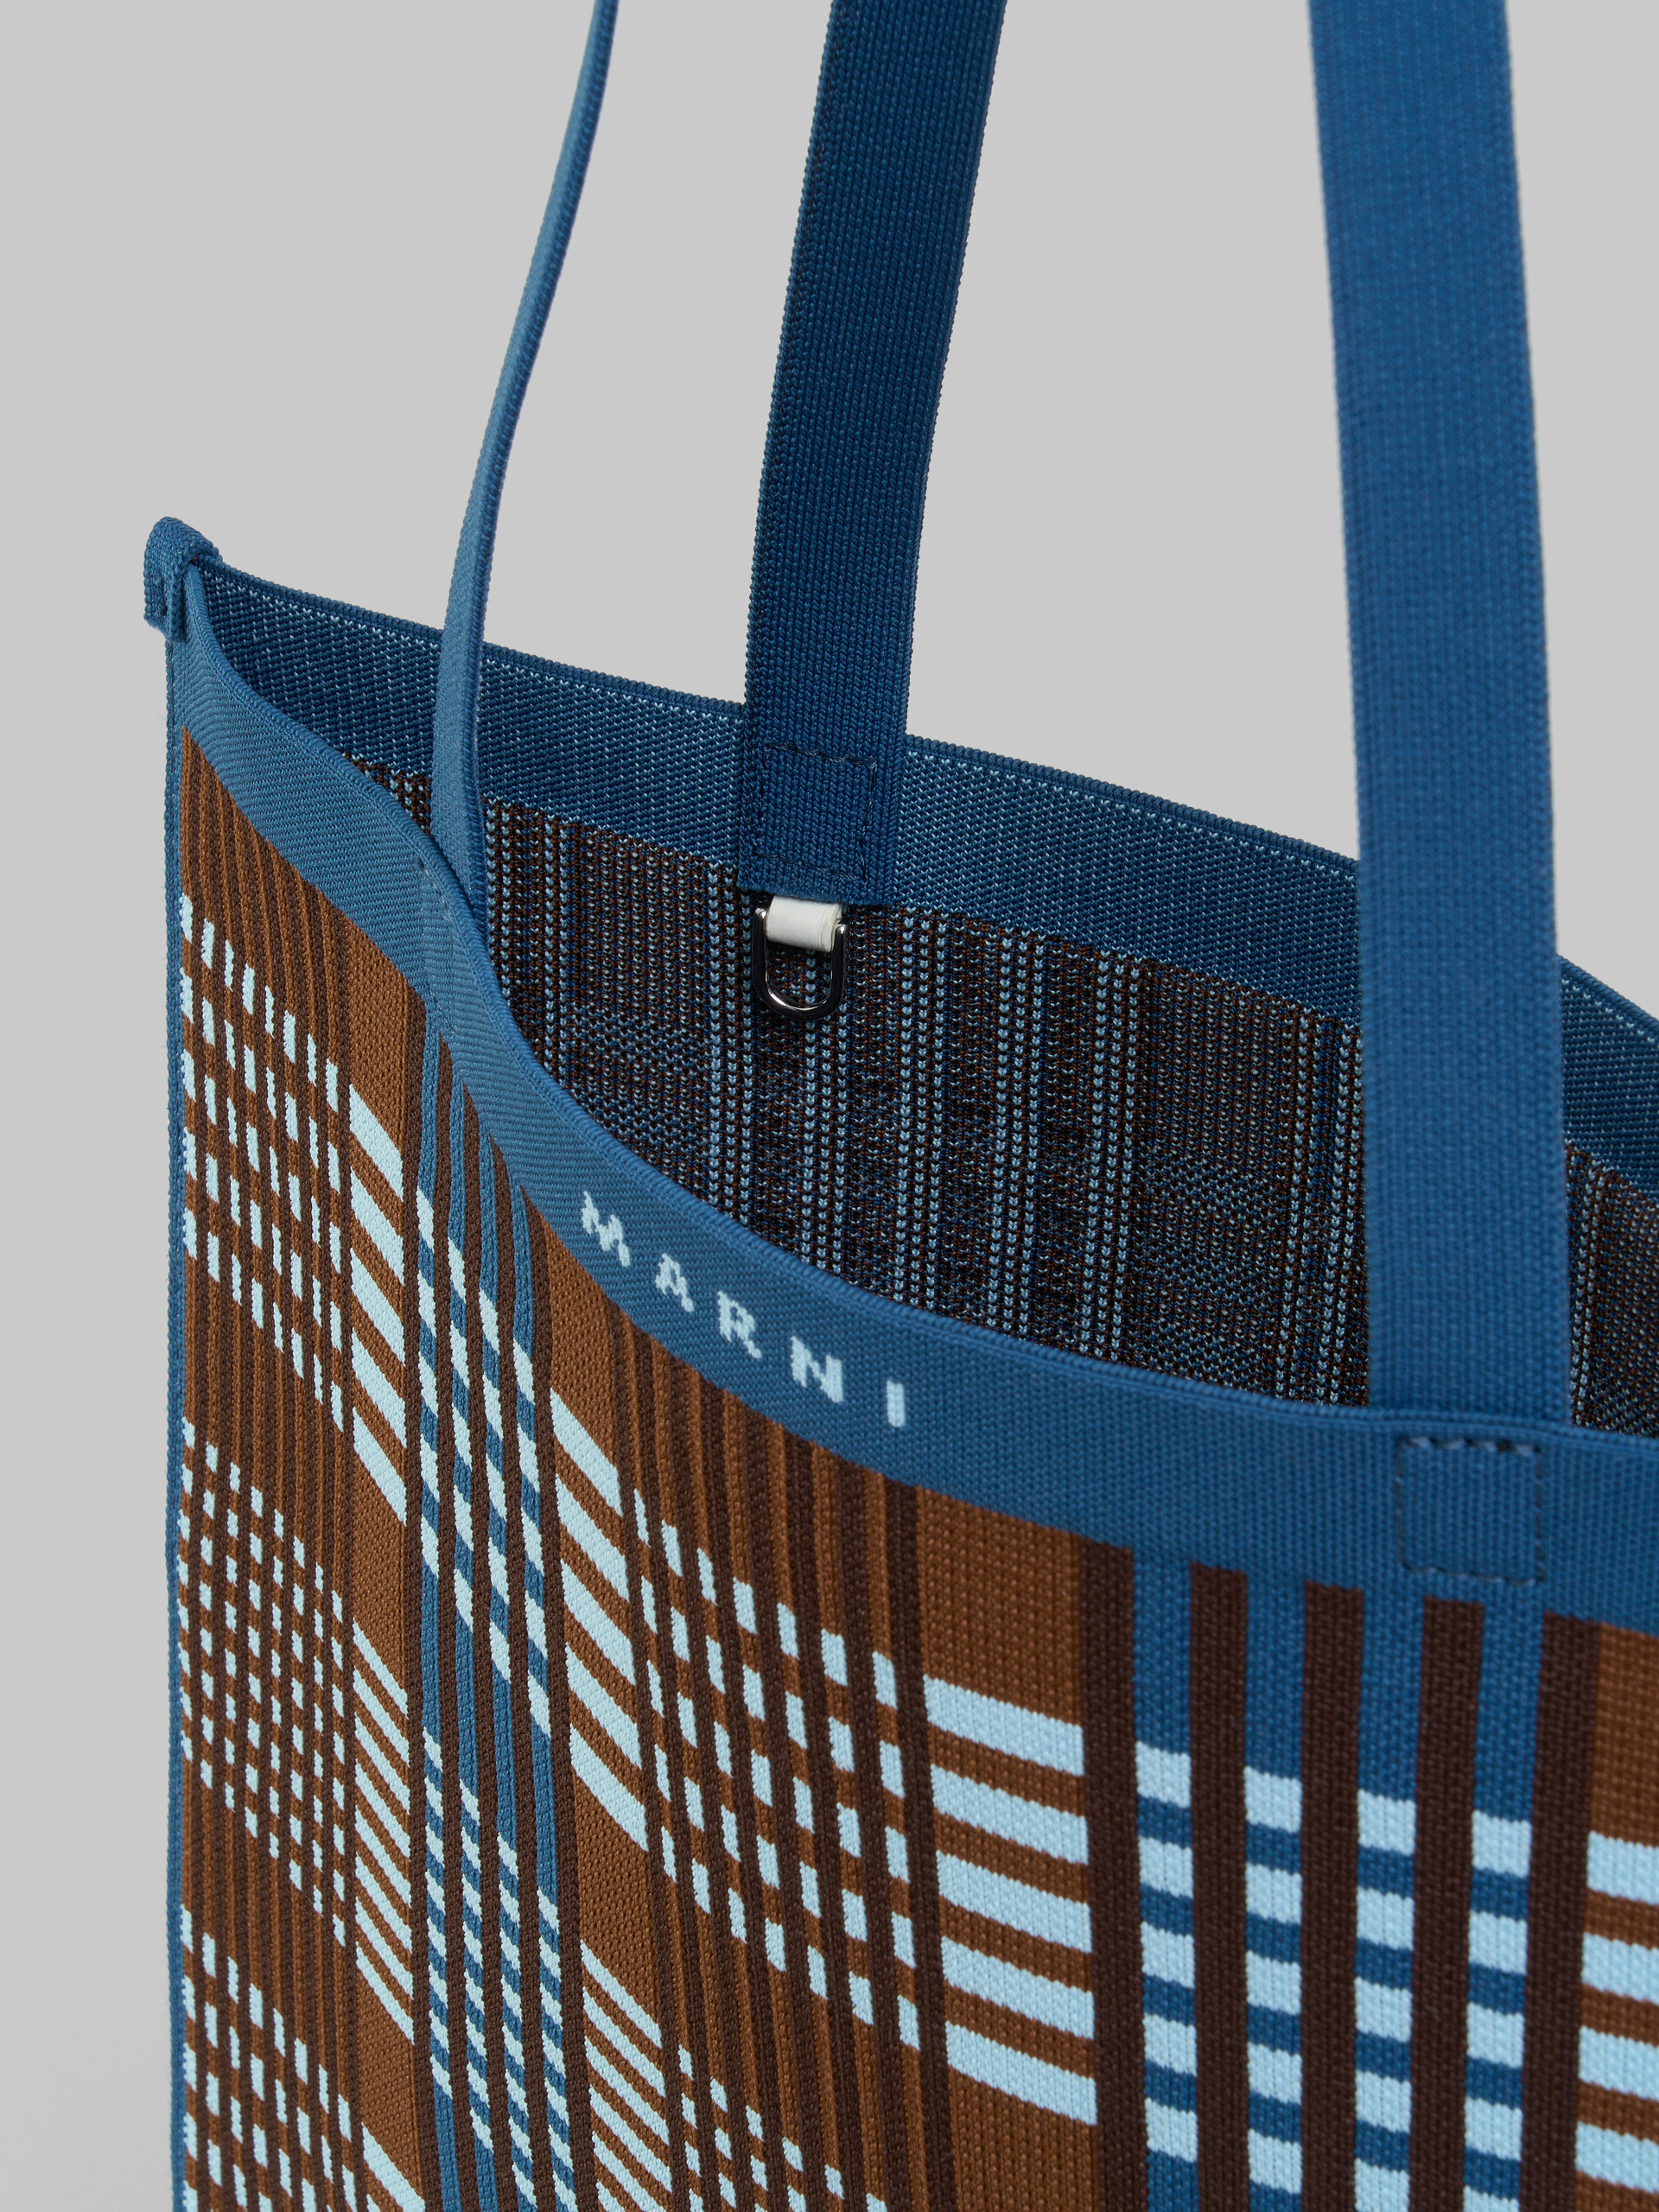 Blau-braun karierte, flache Tote Bag aus Jacquard - Shopper - Image 4